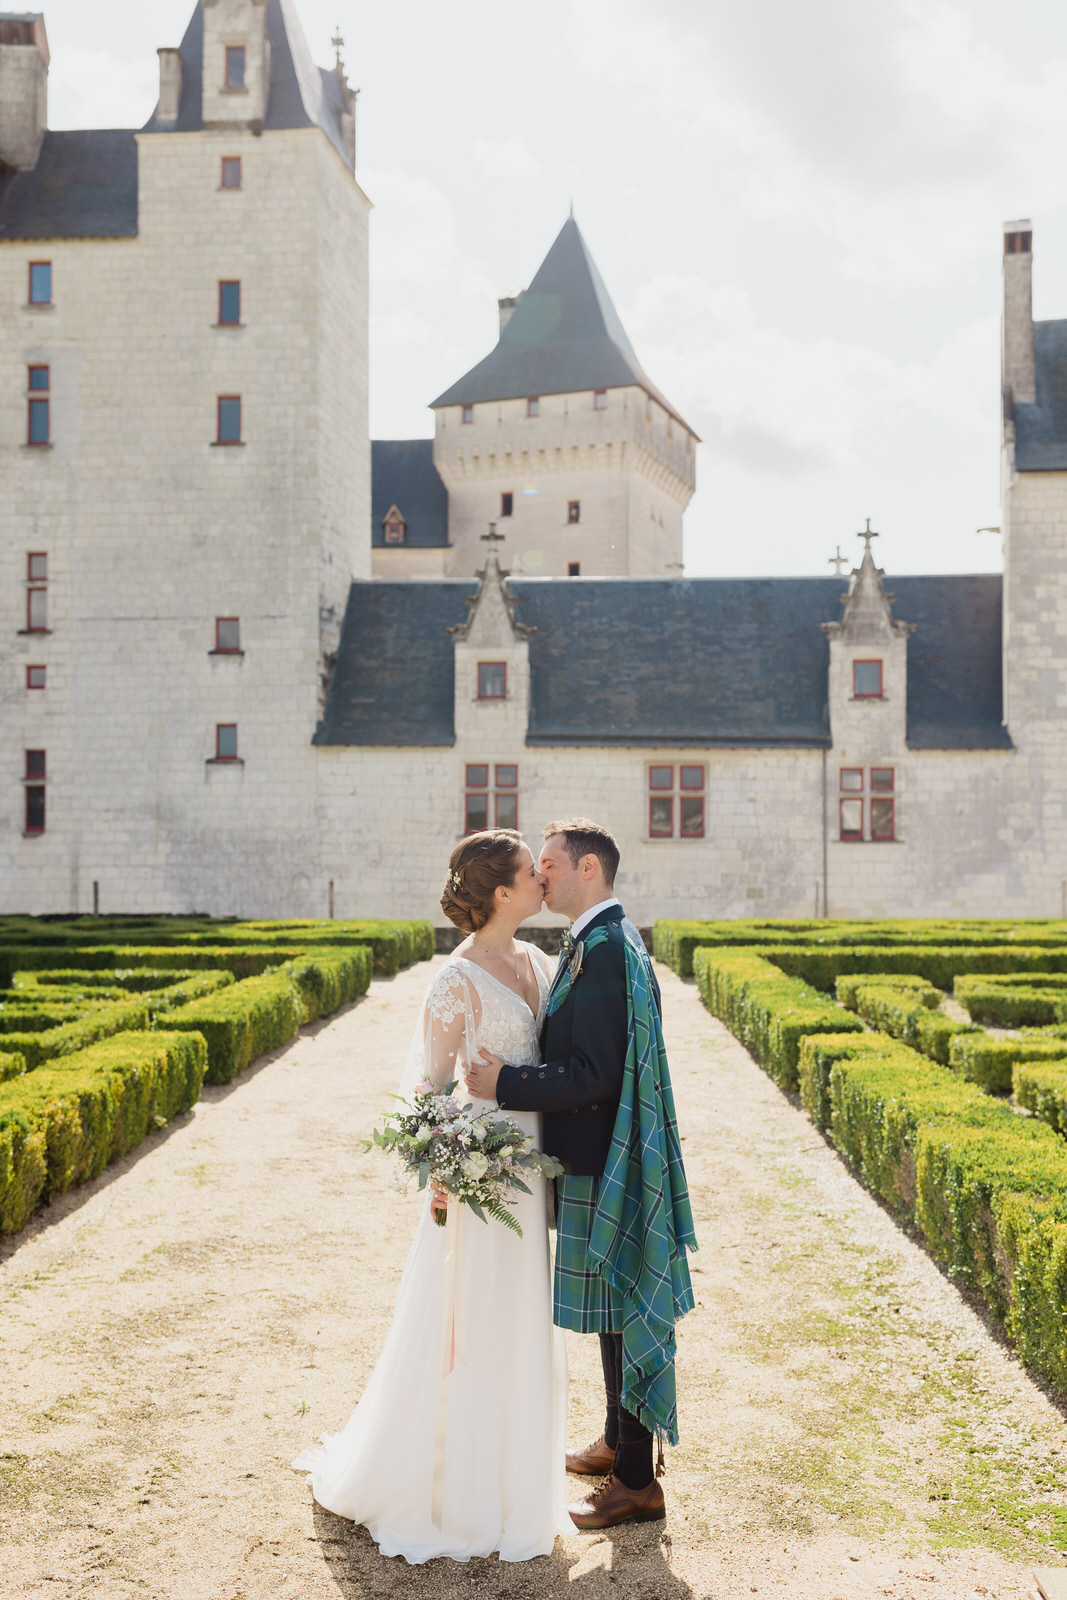 Mariage élégant dans un chateau